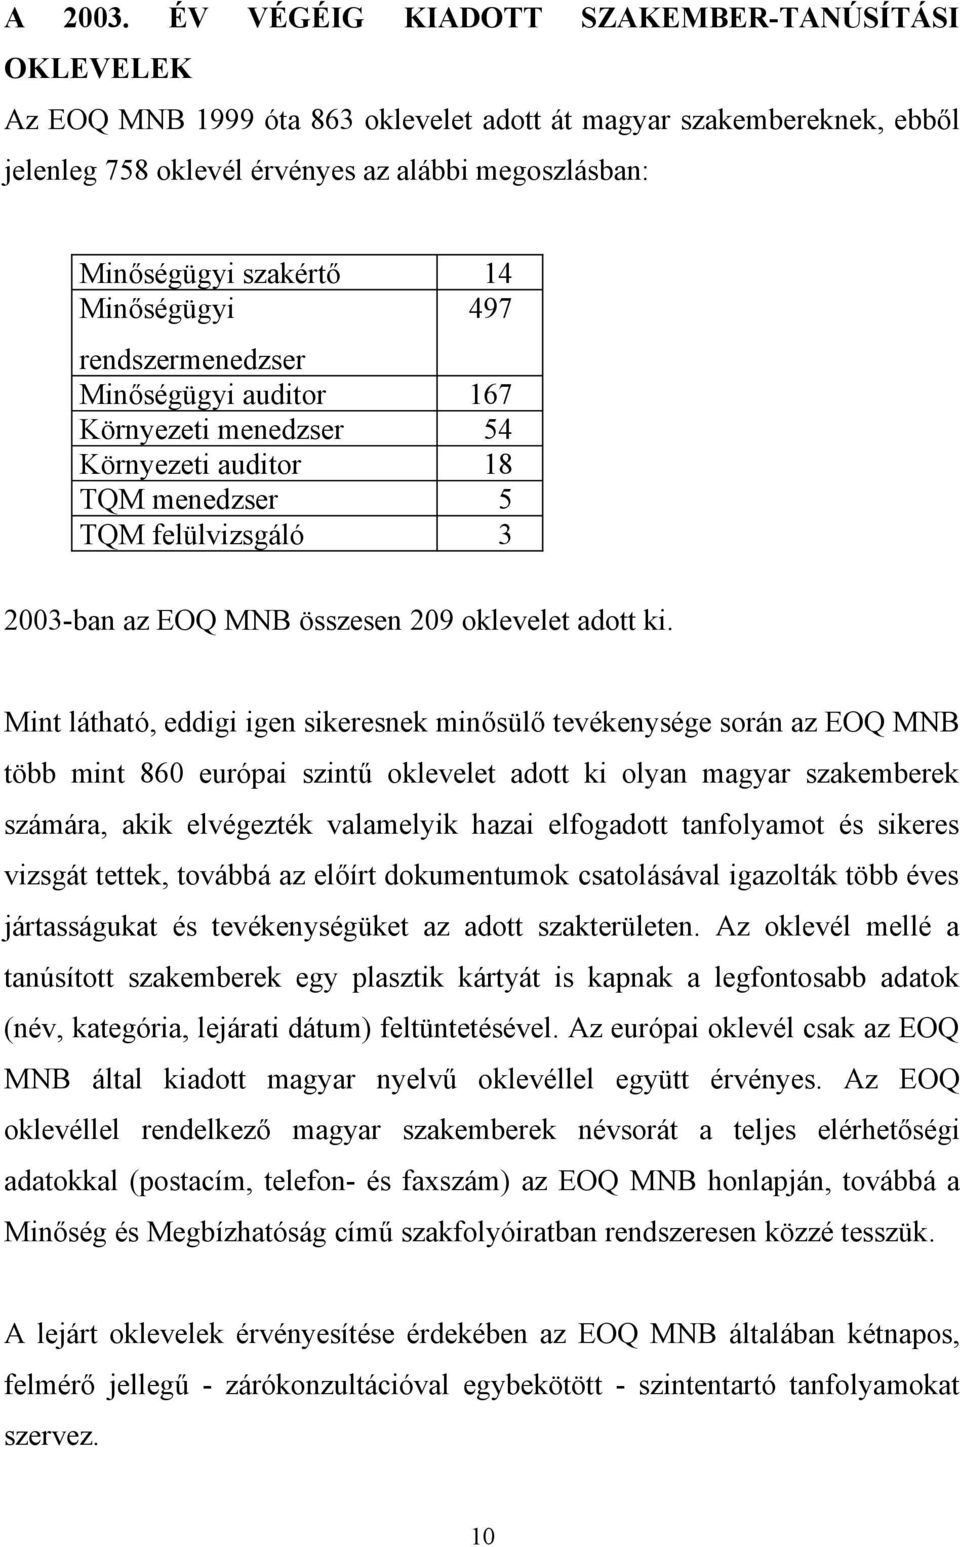 Minőségügyi 497 rendszermenedzser Minőségügyi auditor 167 Környezeti menedzser 54 Környezeti auditor 18 TQM menedzser 5 TQM felülvizsgáló 3 2003-ban az EOQ MNB összesen 209 oklevelet adott ki.